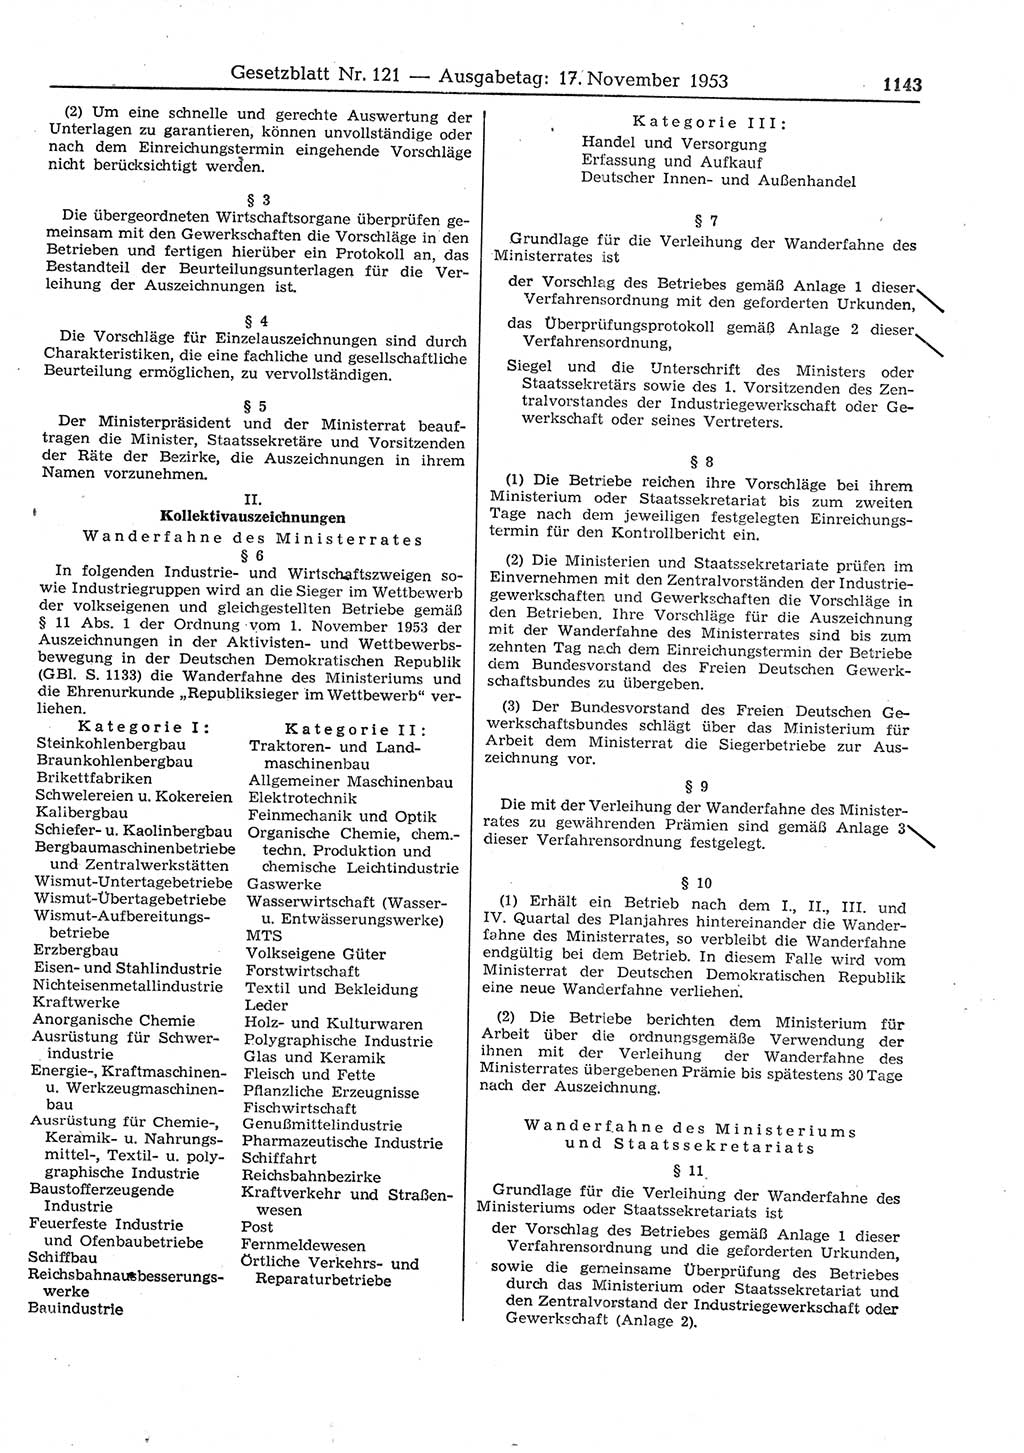 Gesetzblatt (GBl.) der Deutschen Demokratischen Republik (DDR) 1953, Seite 1143 (GBl. DDR 1953, S. 1143)